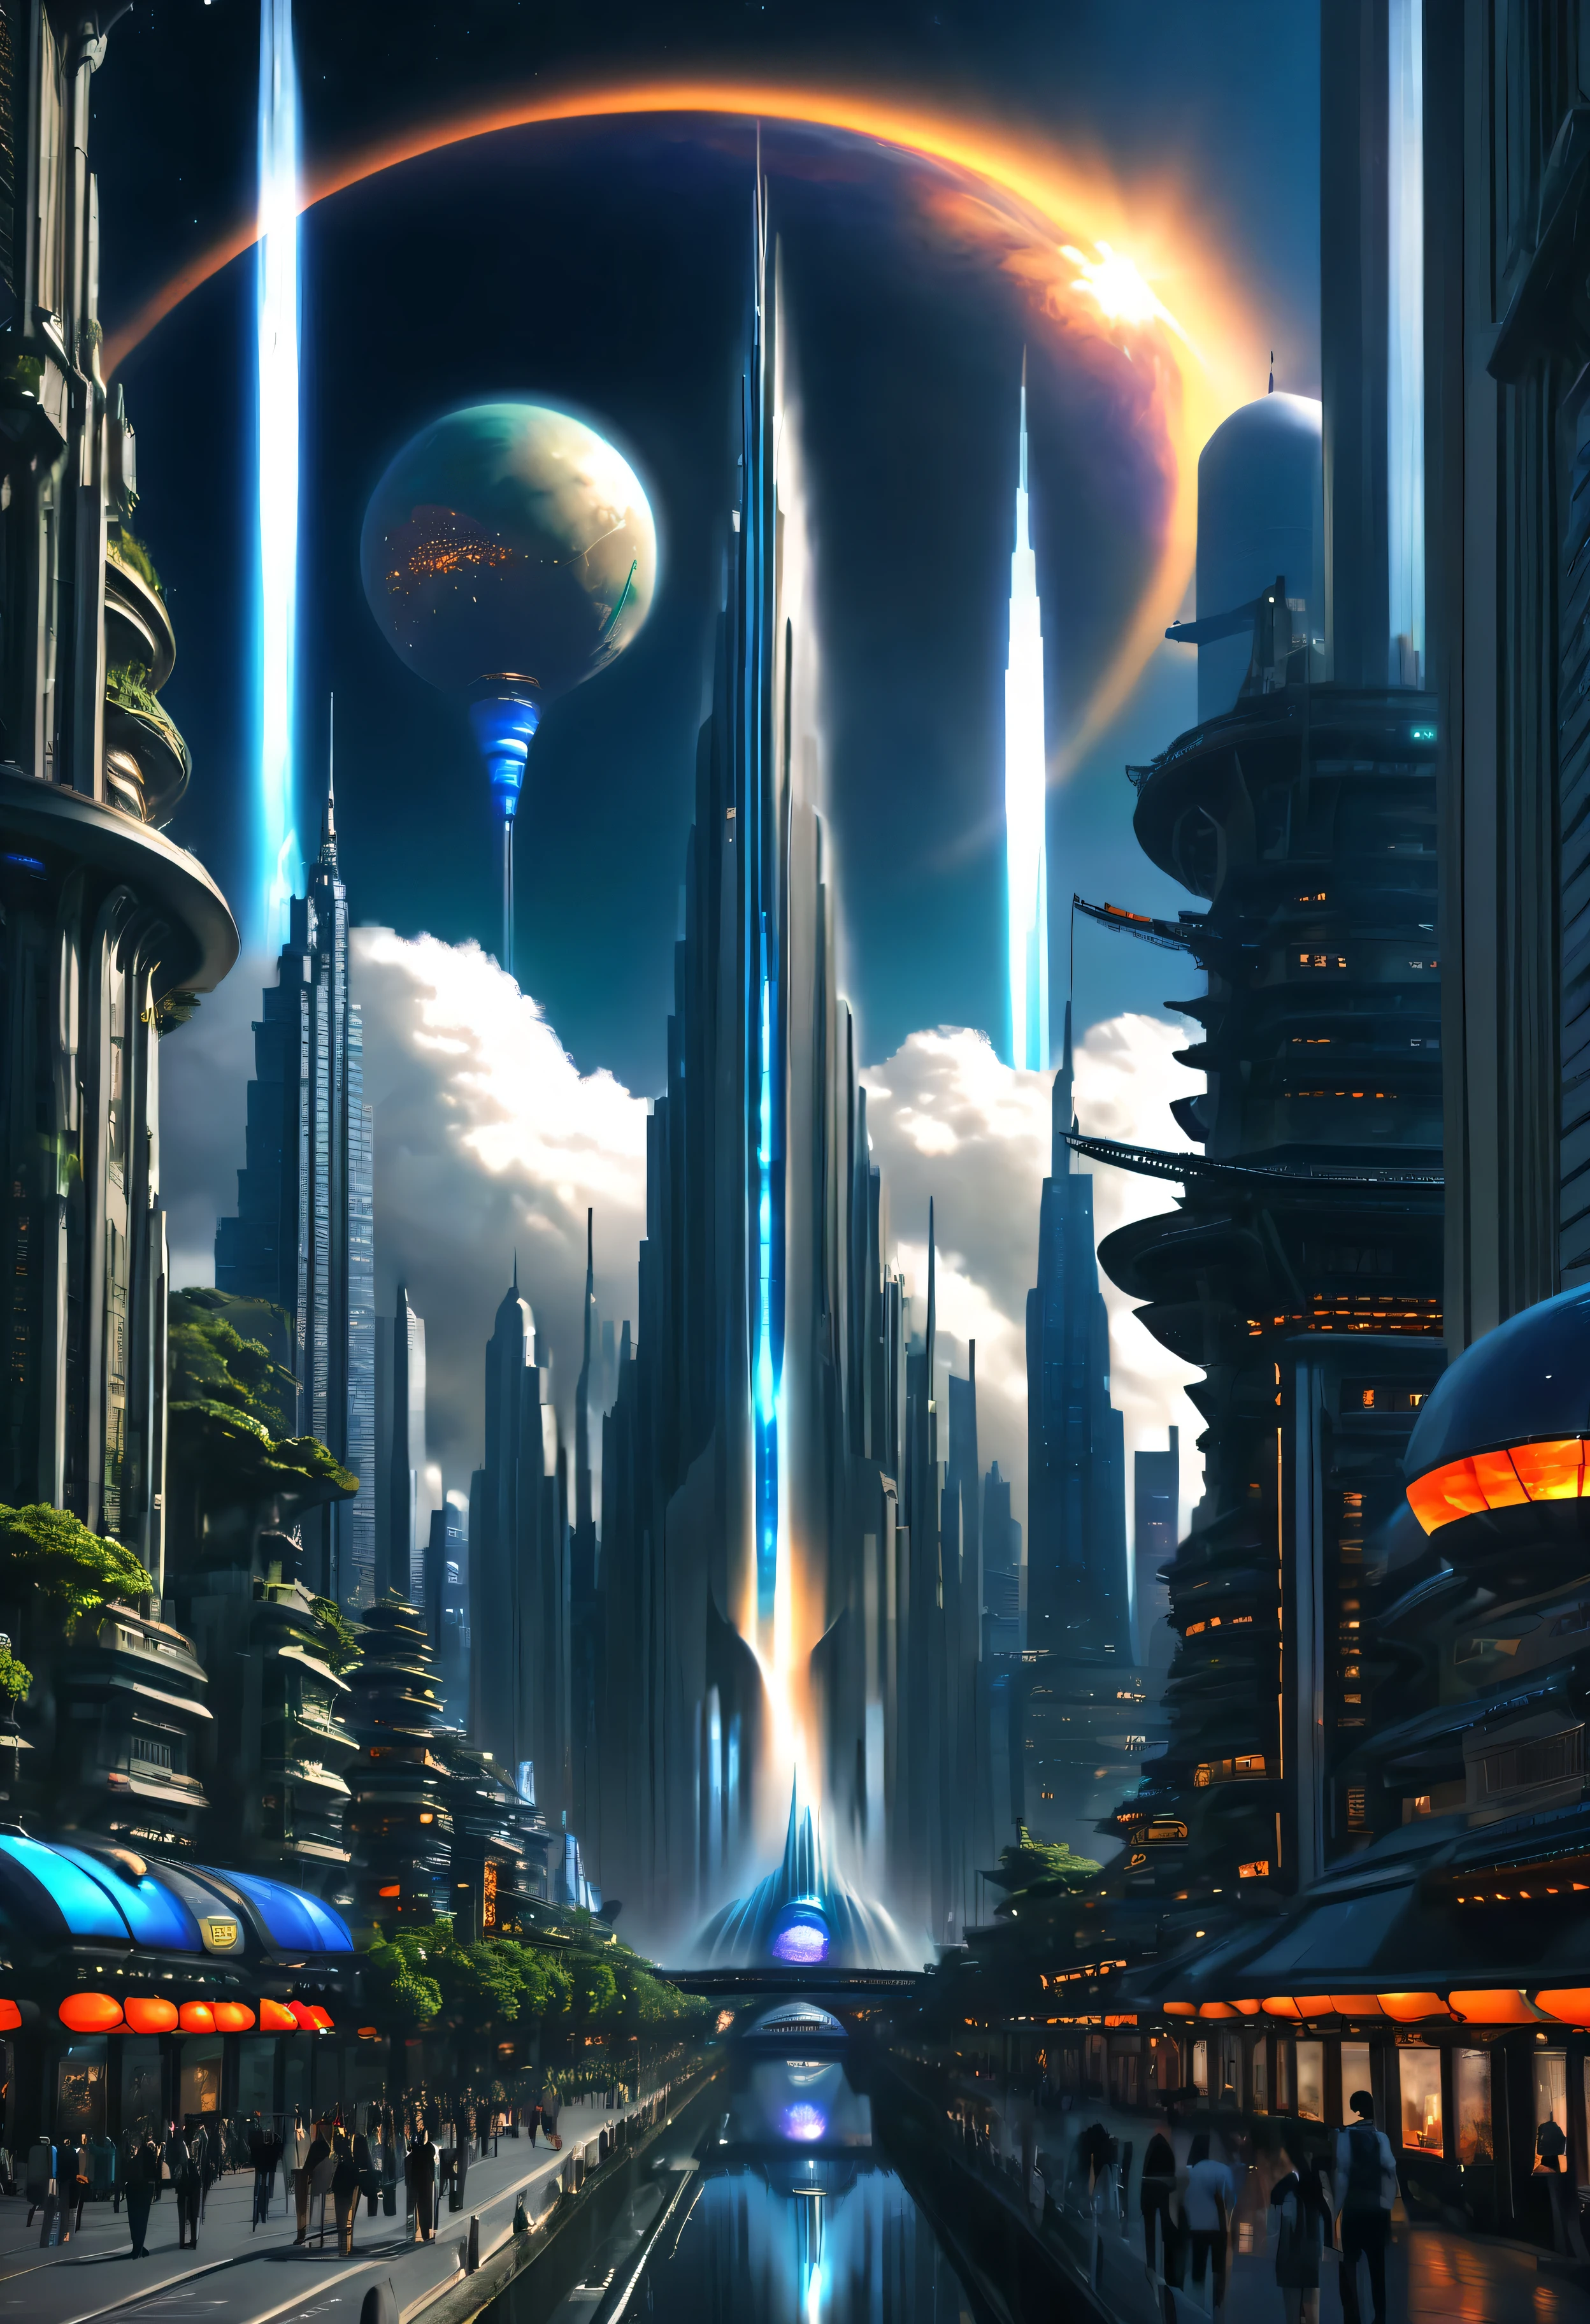 ciudad espacial、ciudades futuristas、flotando en el universo、ＳＦarte por，ciberpunk、Las calles están llenas de rascacielos.、una estacion espacial、Rascacielos altos a través de las nubes，de primera calidad、​obra maestra、sueño、utópico、planeta Tierra、Mundo de sueños、fantasía、𝓡𝓸𝓶𝓪𝓷𝓽𝓲𝓬、bella ciudad、ciudad espacial、Un mundo mucho más allá de la creación humana，Hay una enorme cascada，